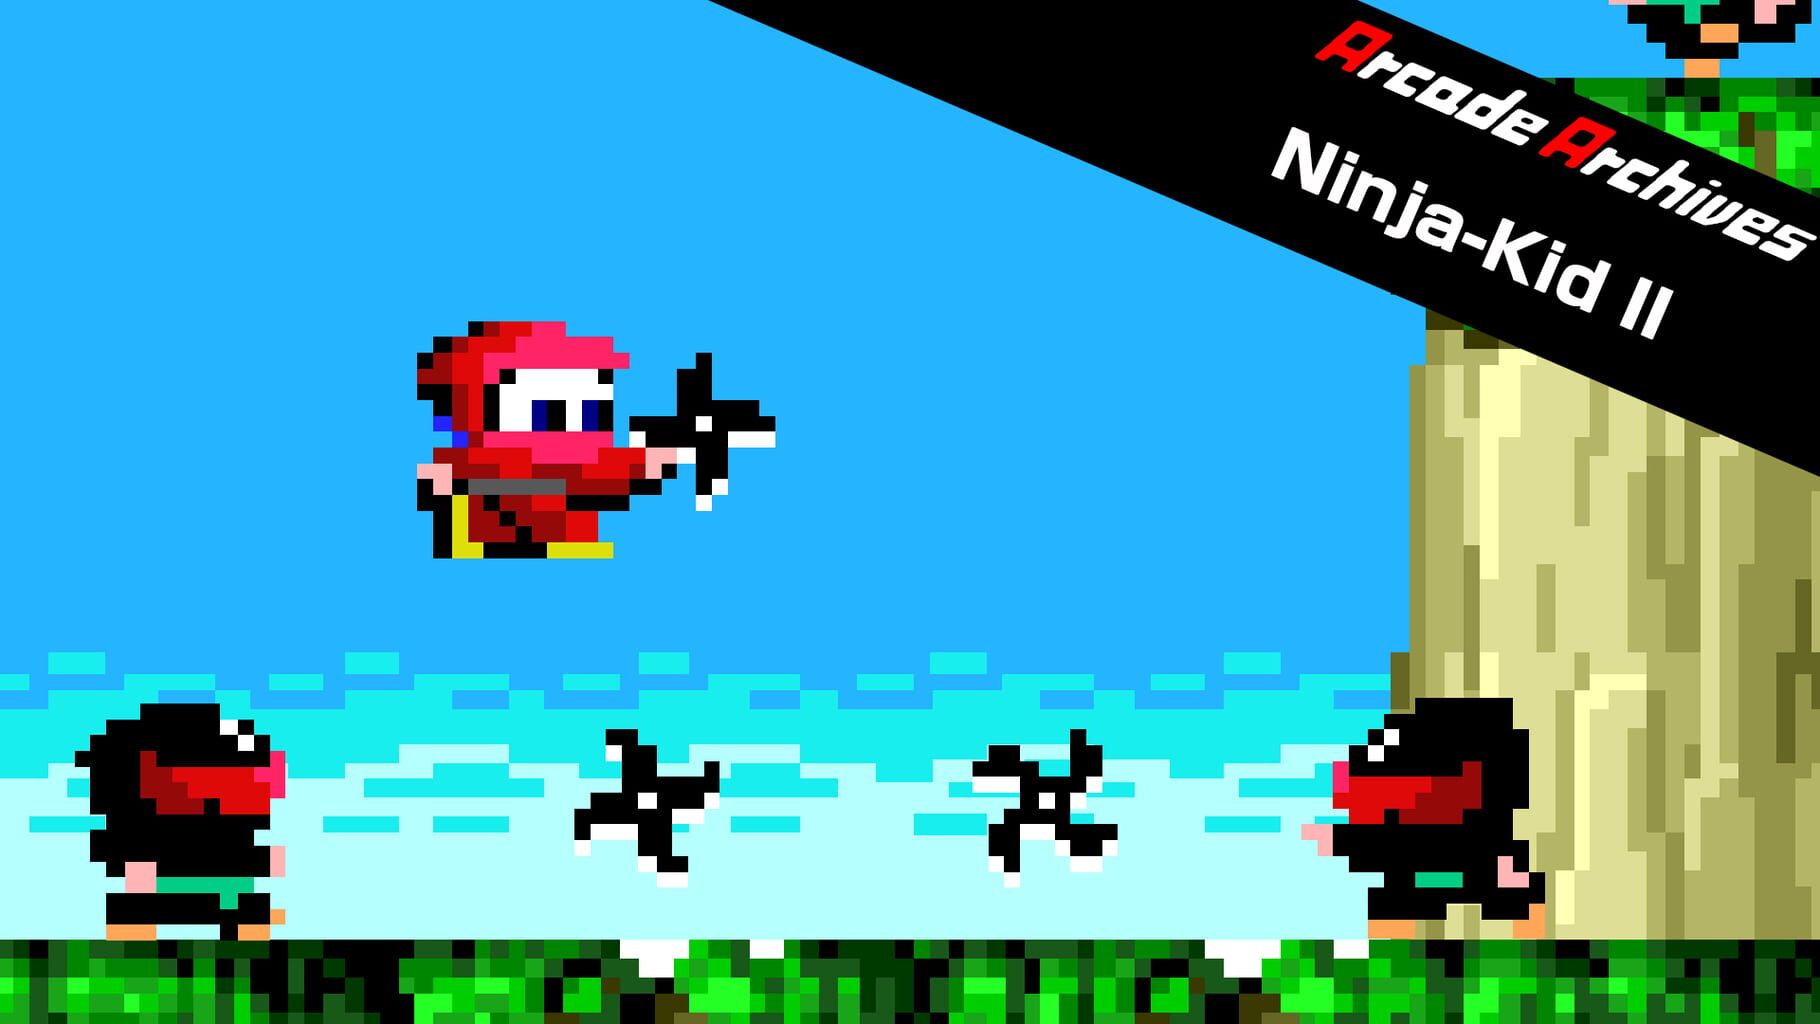 Arcade Archives: Ninja-Kid II artwork